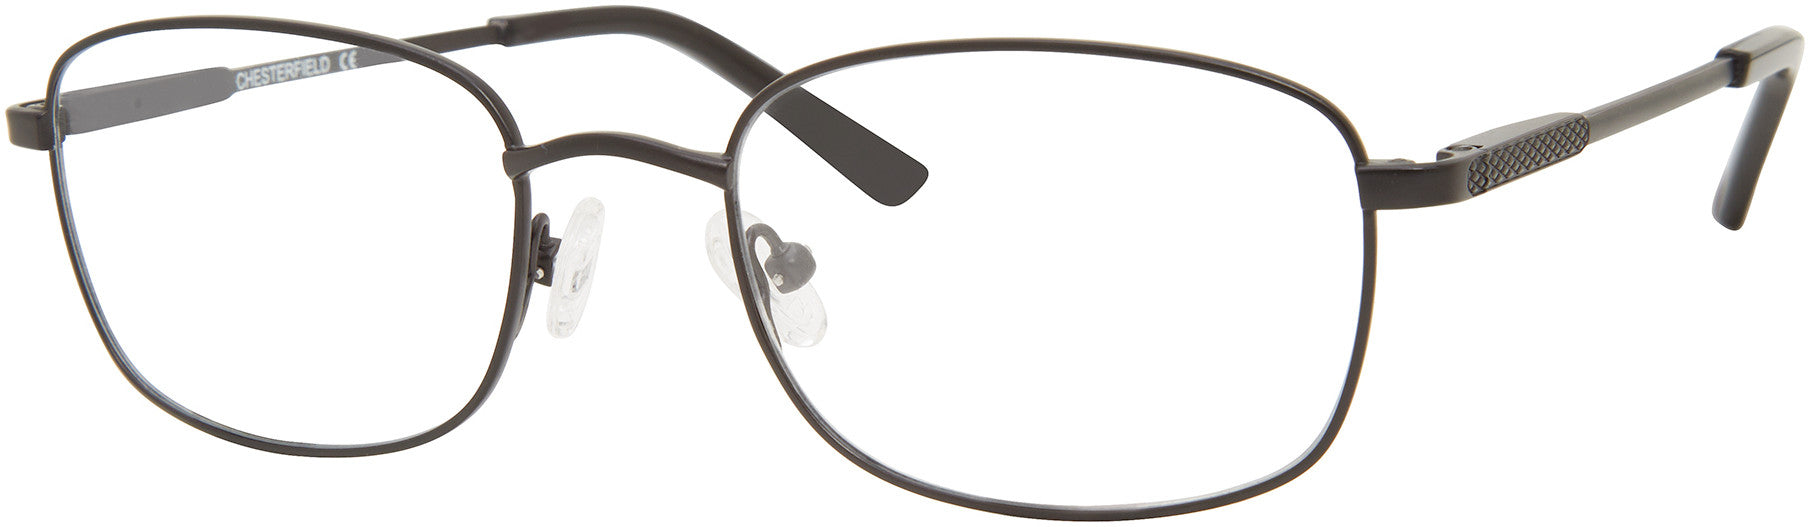  Chesterfield 890/T Rectangular Eyeglasses 0003-0003  Matte Black (00 Demo Lens)